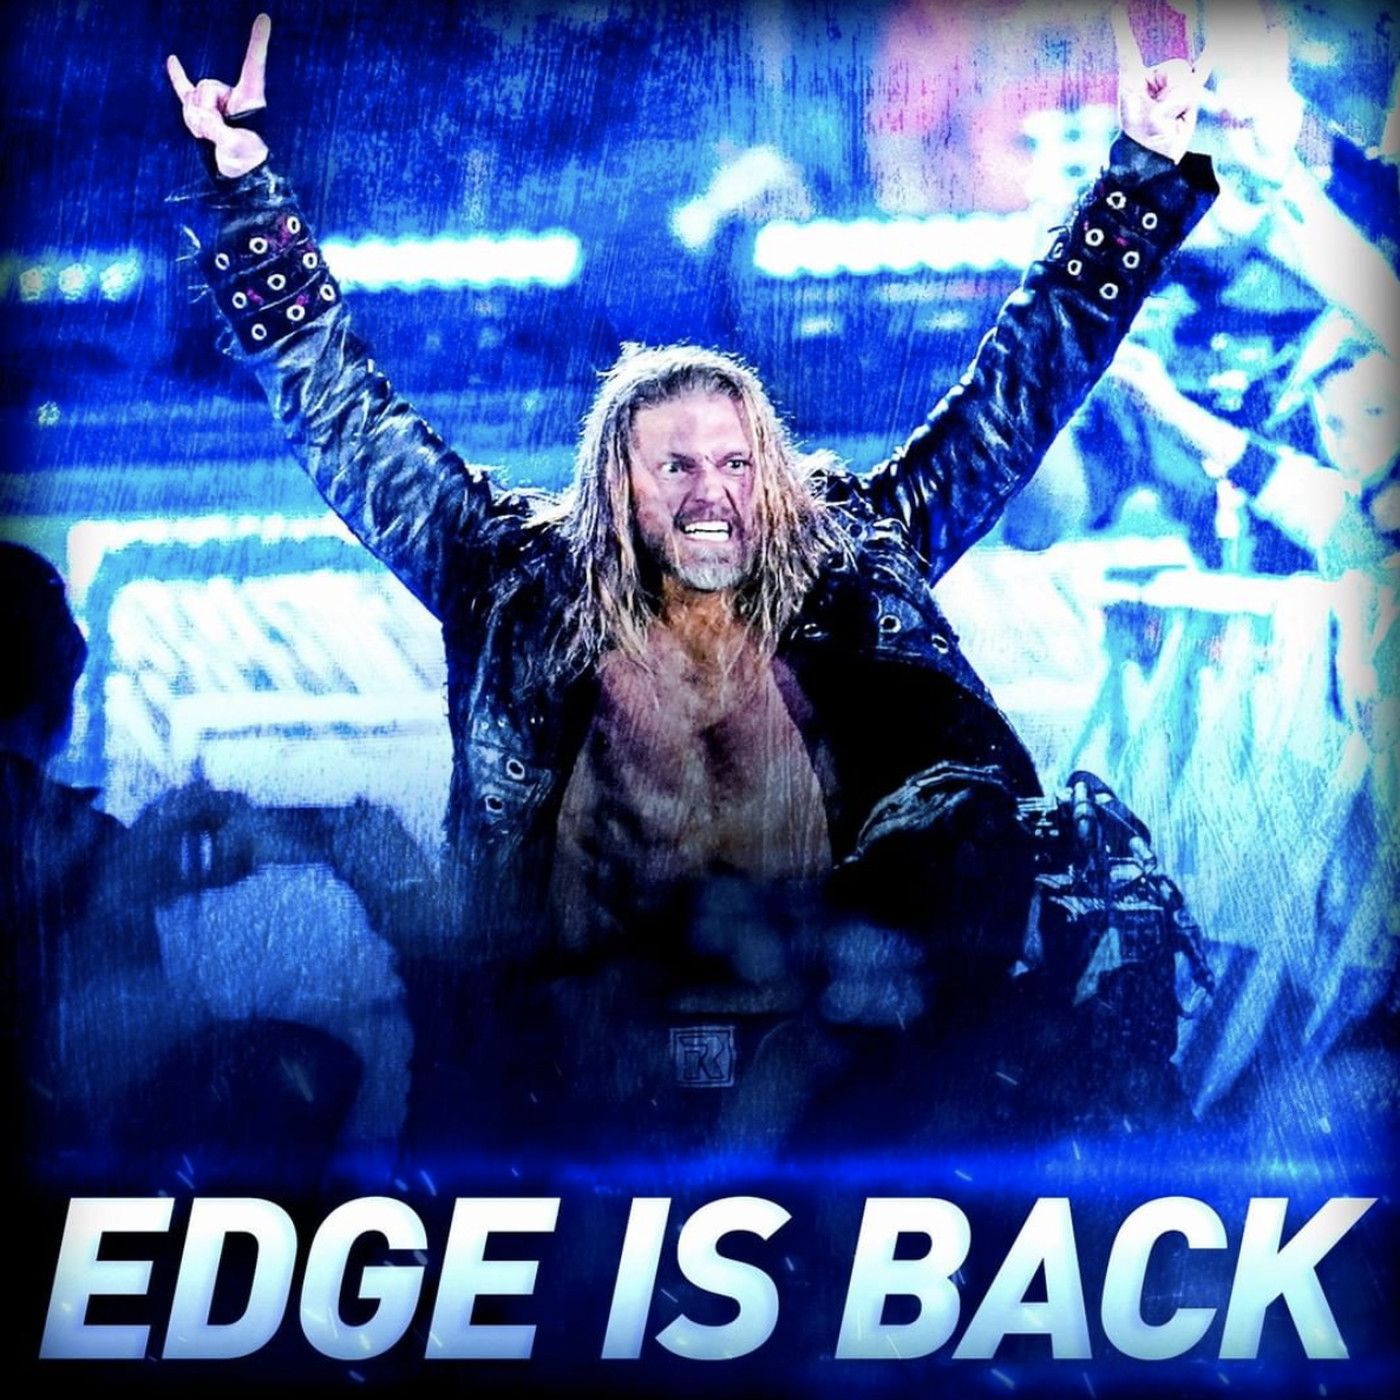 The secret origin of, and masterplan for, Edge's comeback